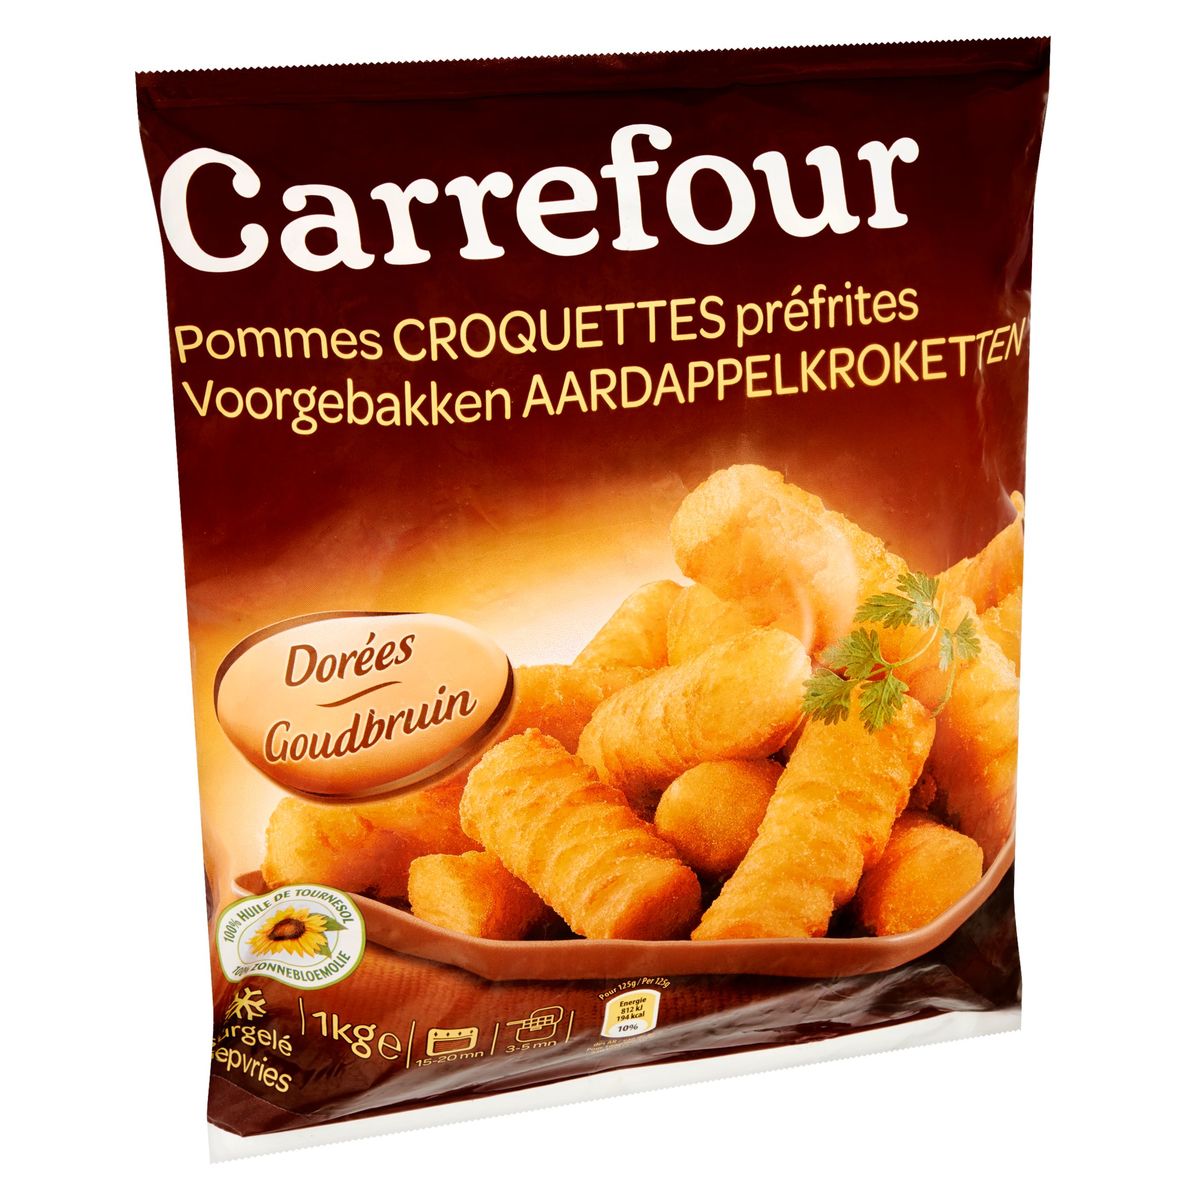 Carrefour Voorgebakken Aardappelkroketten Goudbruin 1 kg